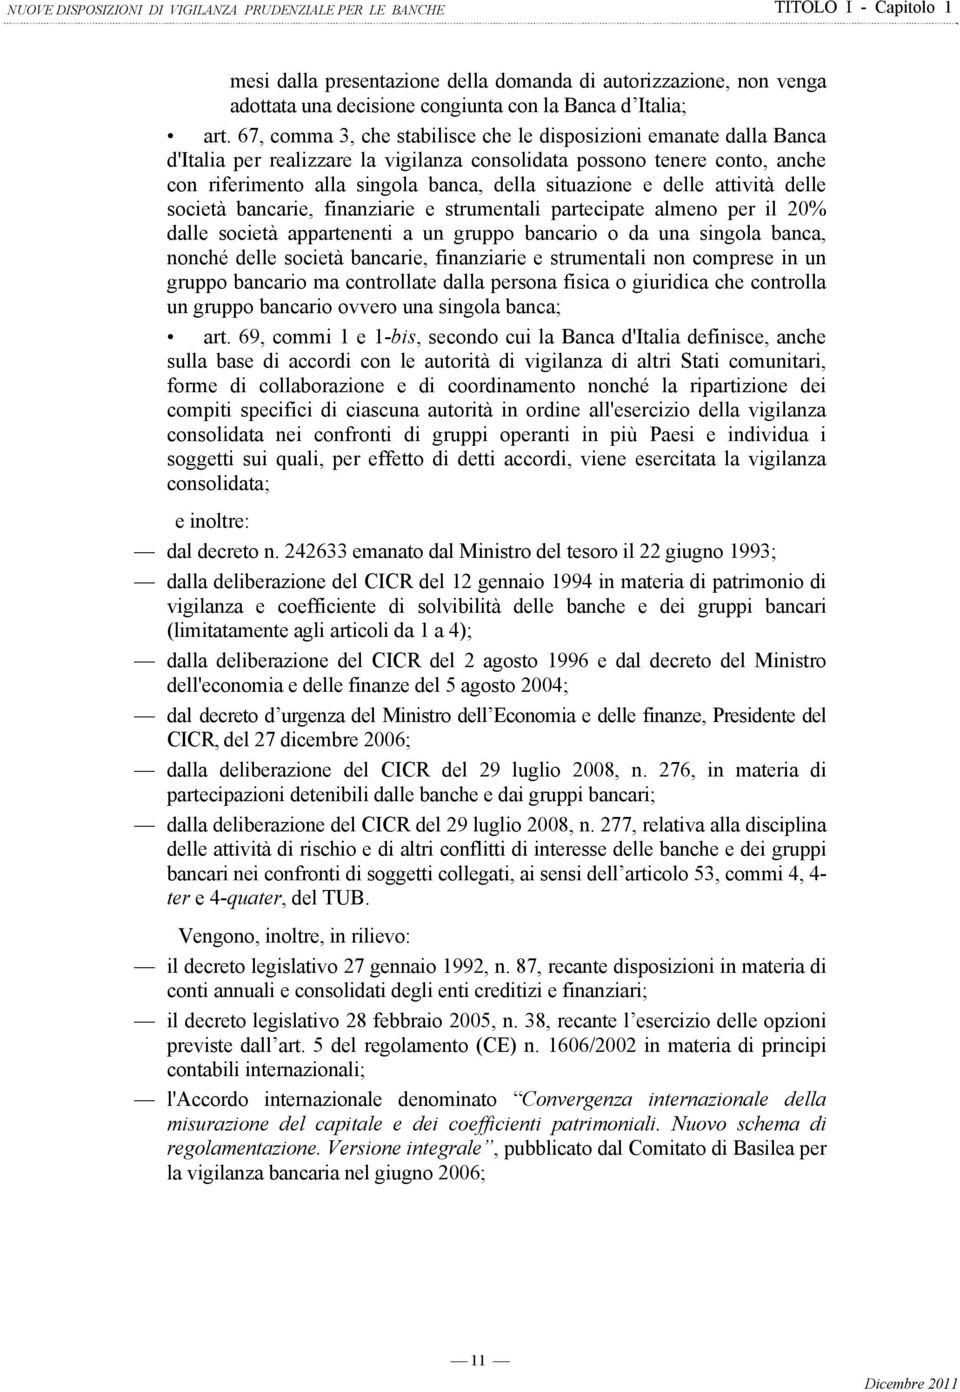 67, comma 3, che stabilisce che le disposizioni emanate dalla Banca d'italia per realizzare la vigilanza consolidata possono tenere conto, anche con riferimento alla singola banca, della situazione e